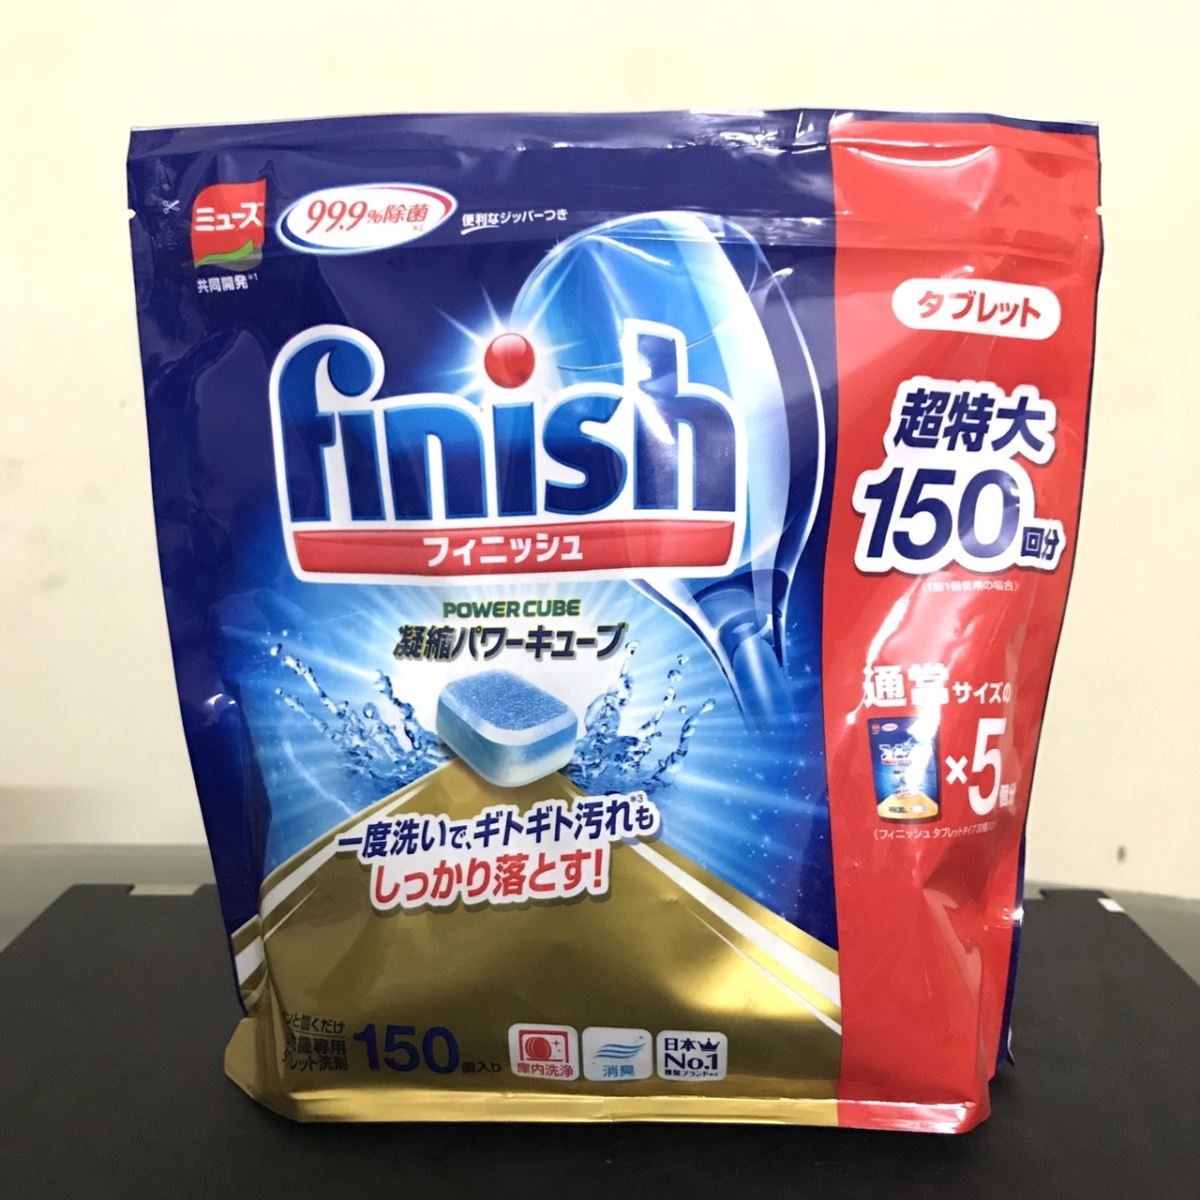 Viên rửa bát Finish xuất xứ từ Nhật